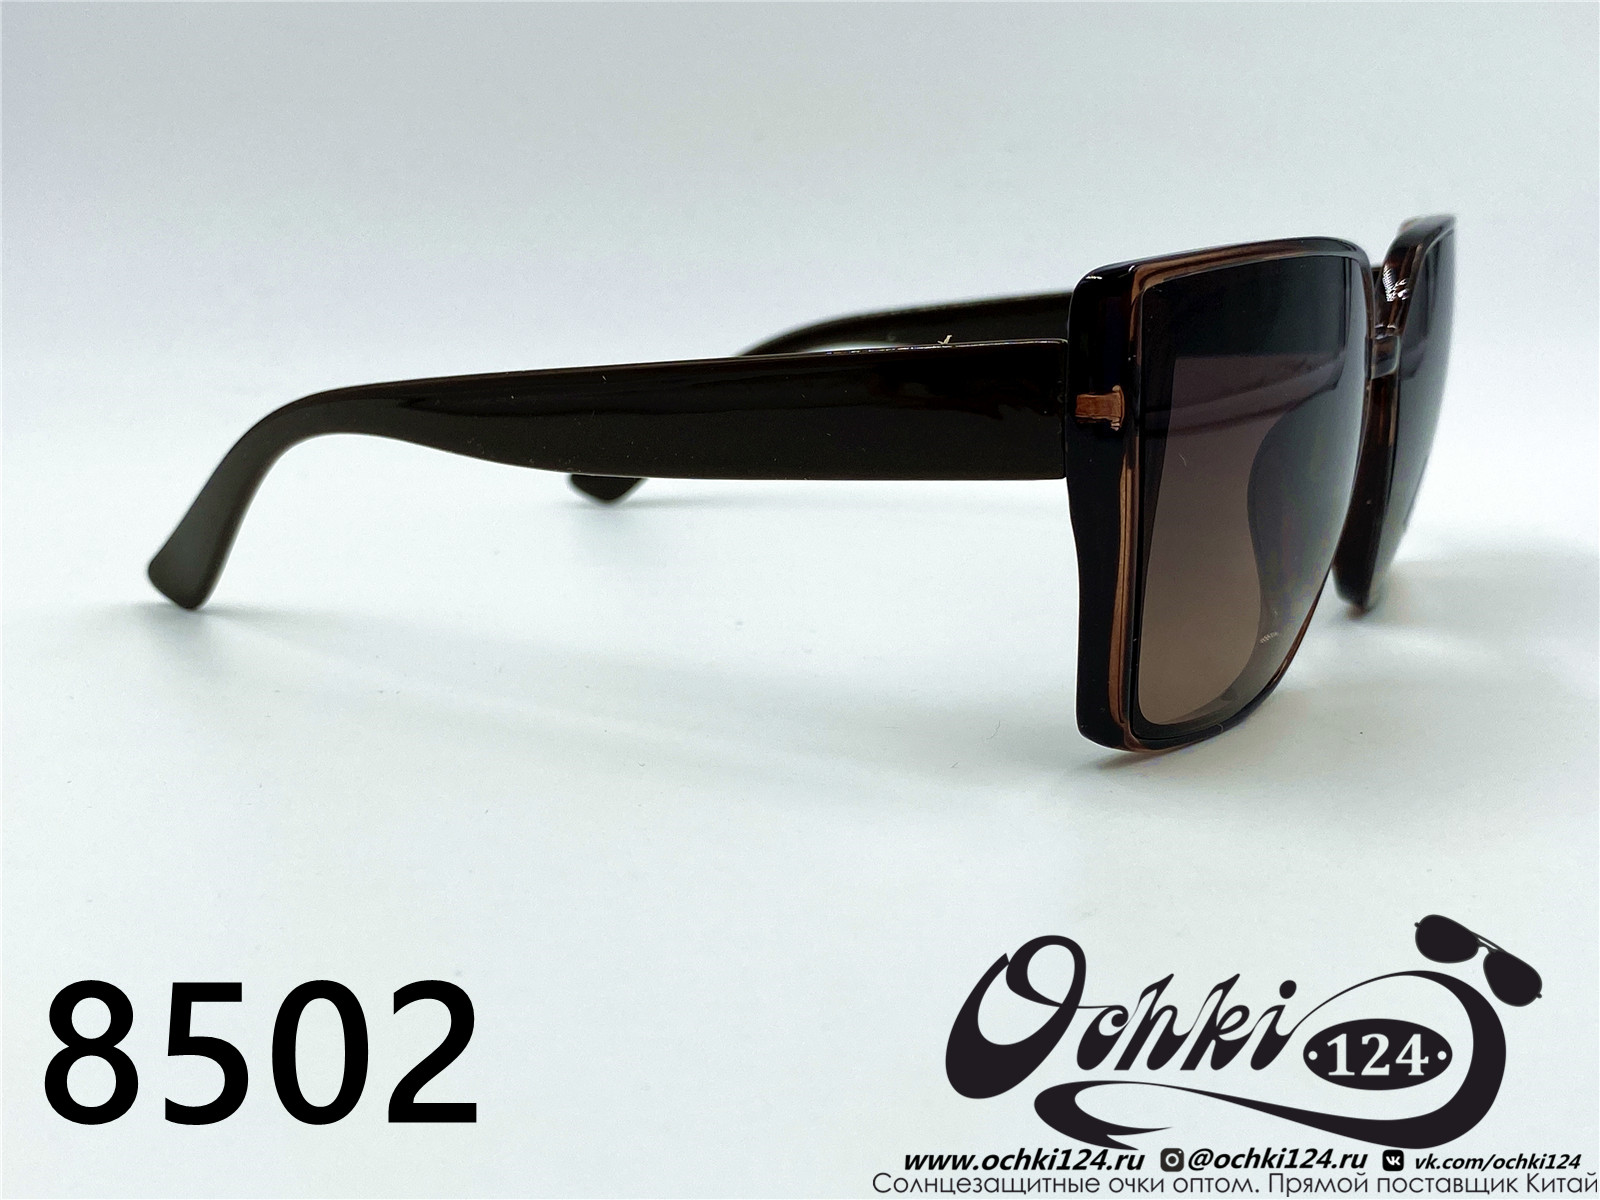  Солнцезащитные очки картинка 2022 Женские Квадратные Aras 8502-5 